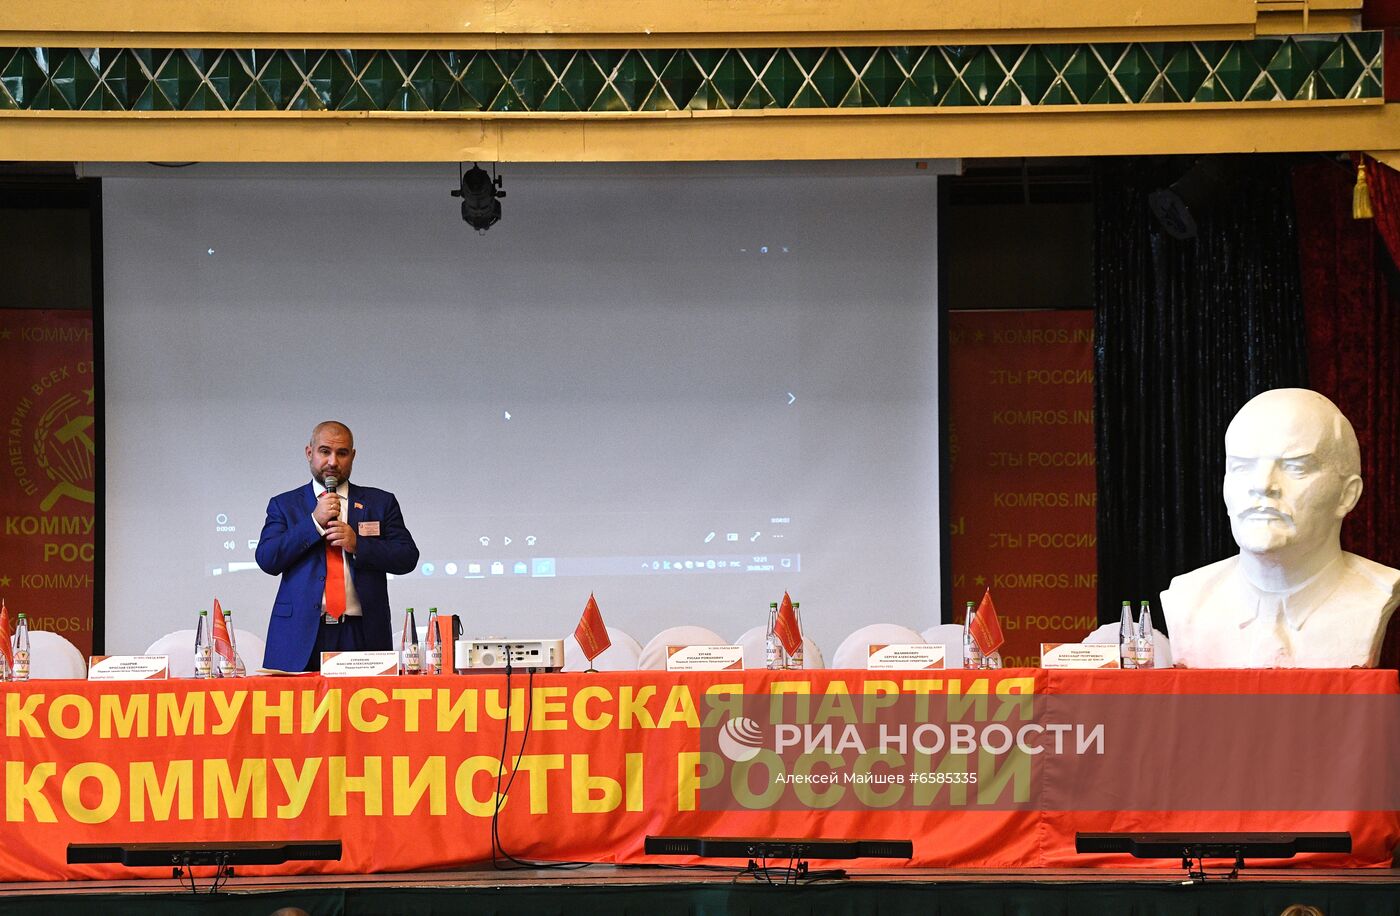 Съезд партии "Коммунисты России" 